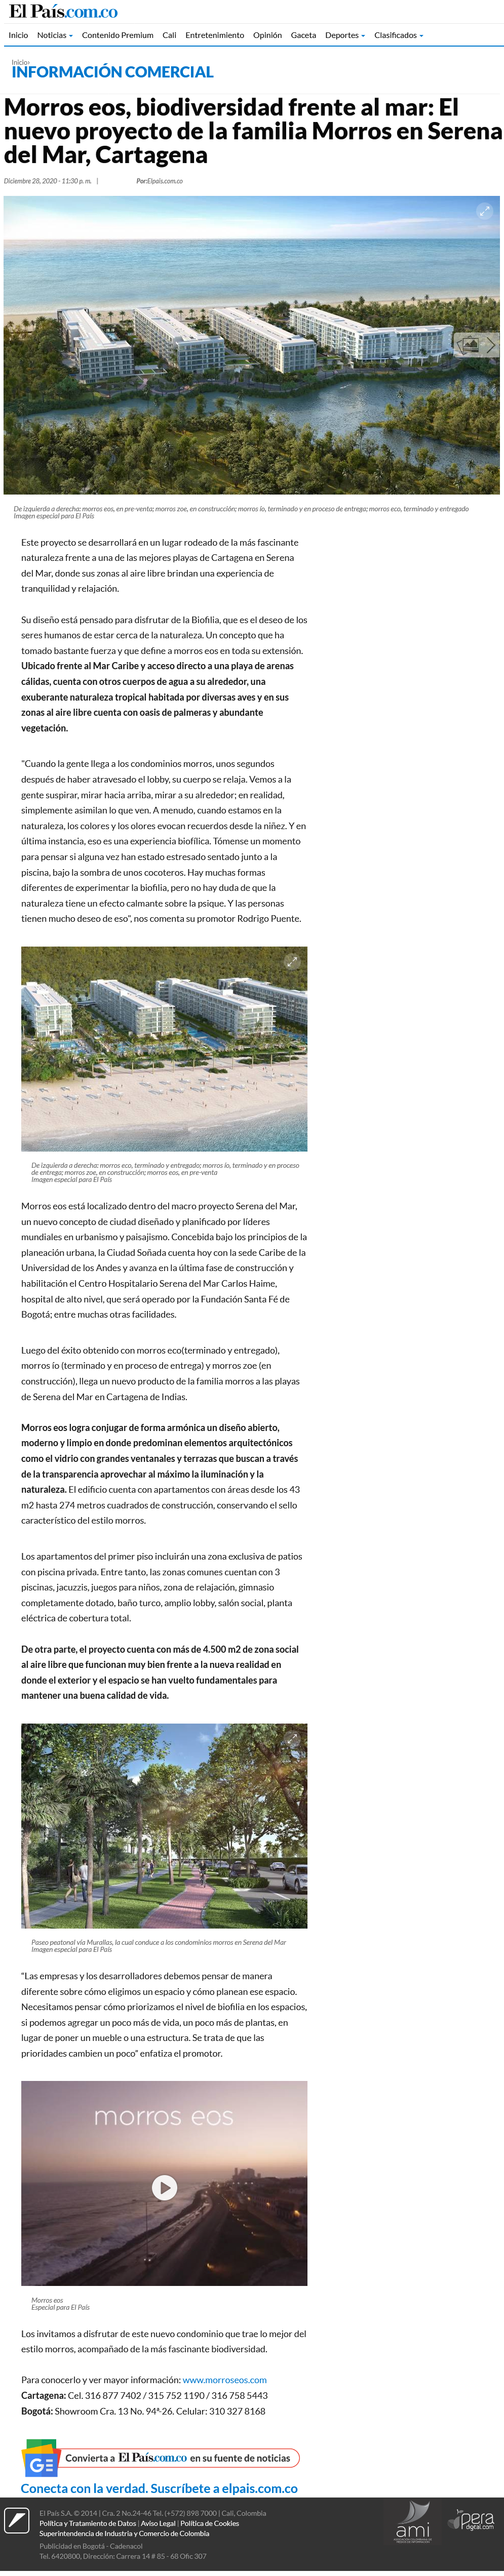 Morros eos, biodiversidad frente al mar: El nuevo proyecto de la familia Morros en Serena del Mar, Cartagena